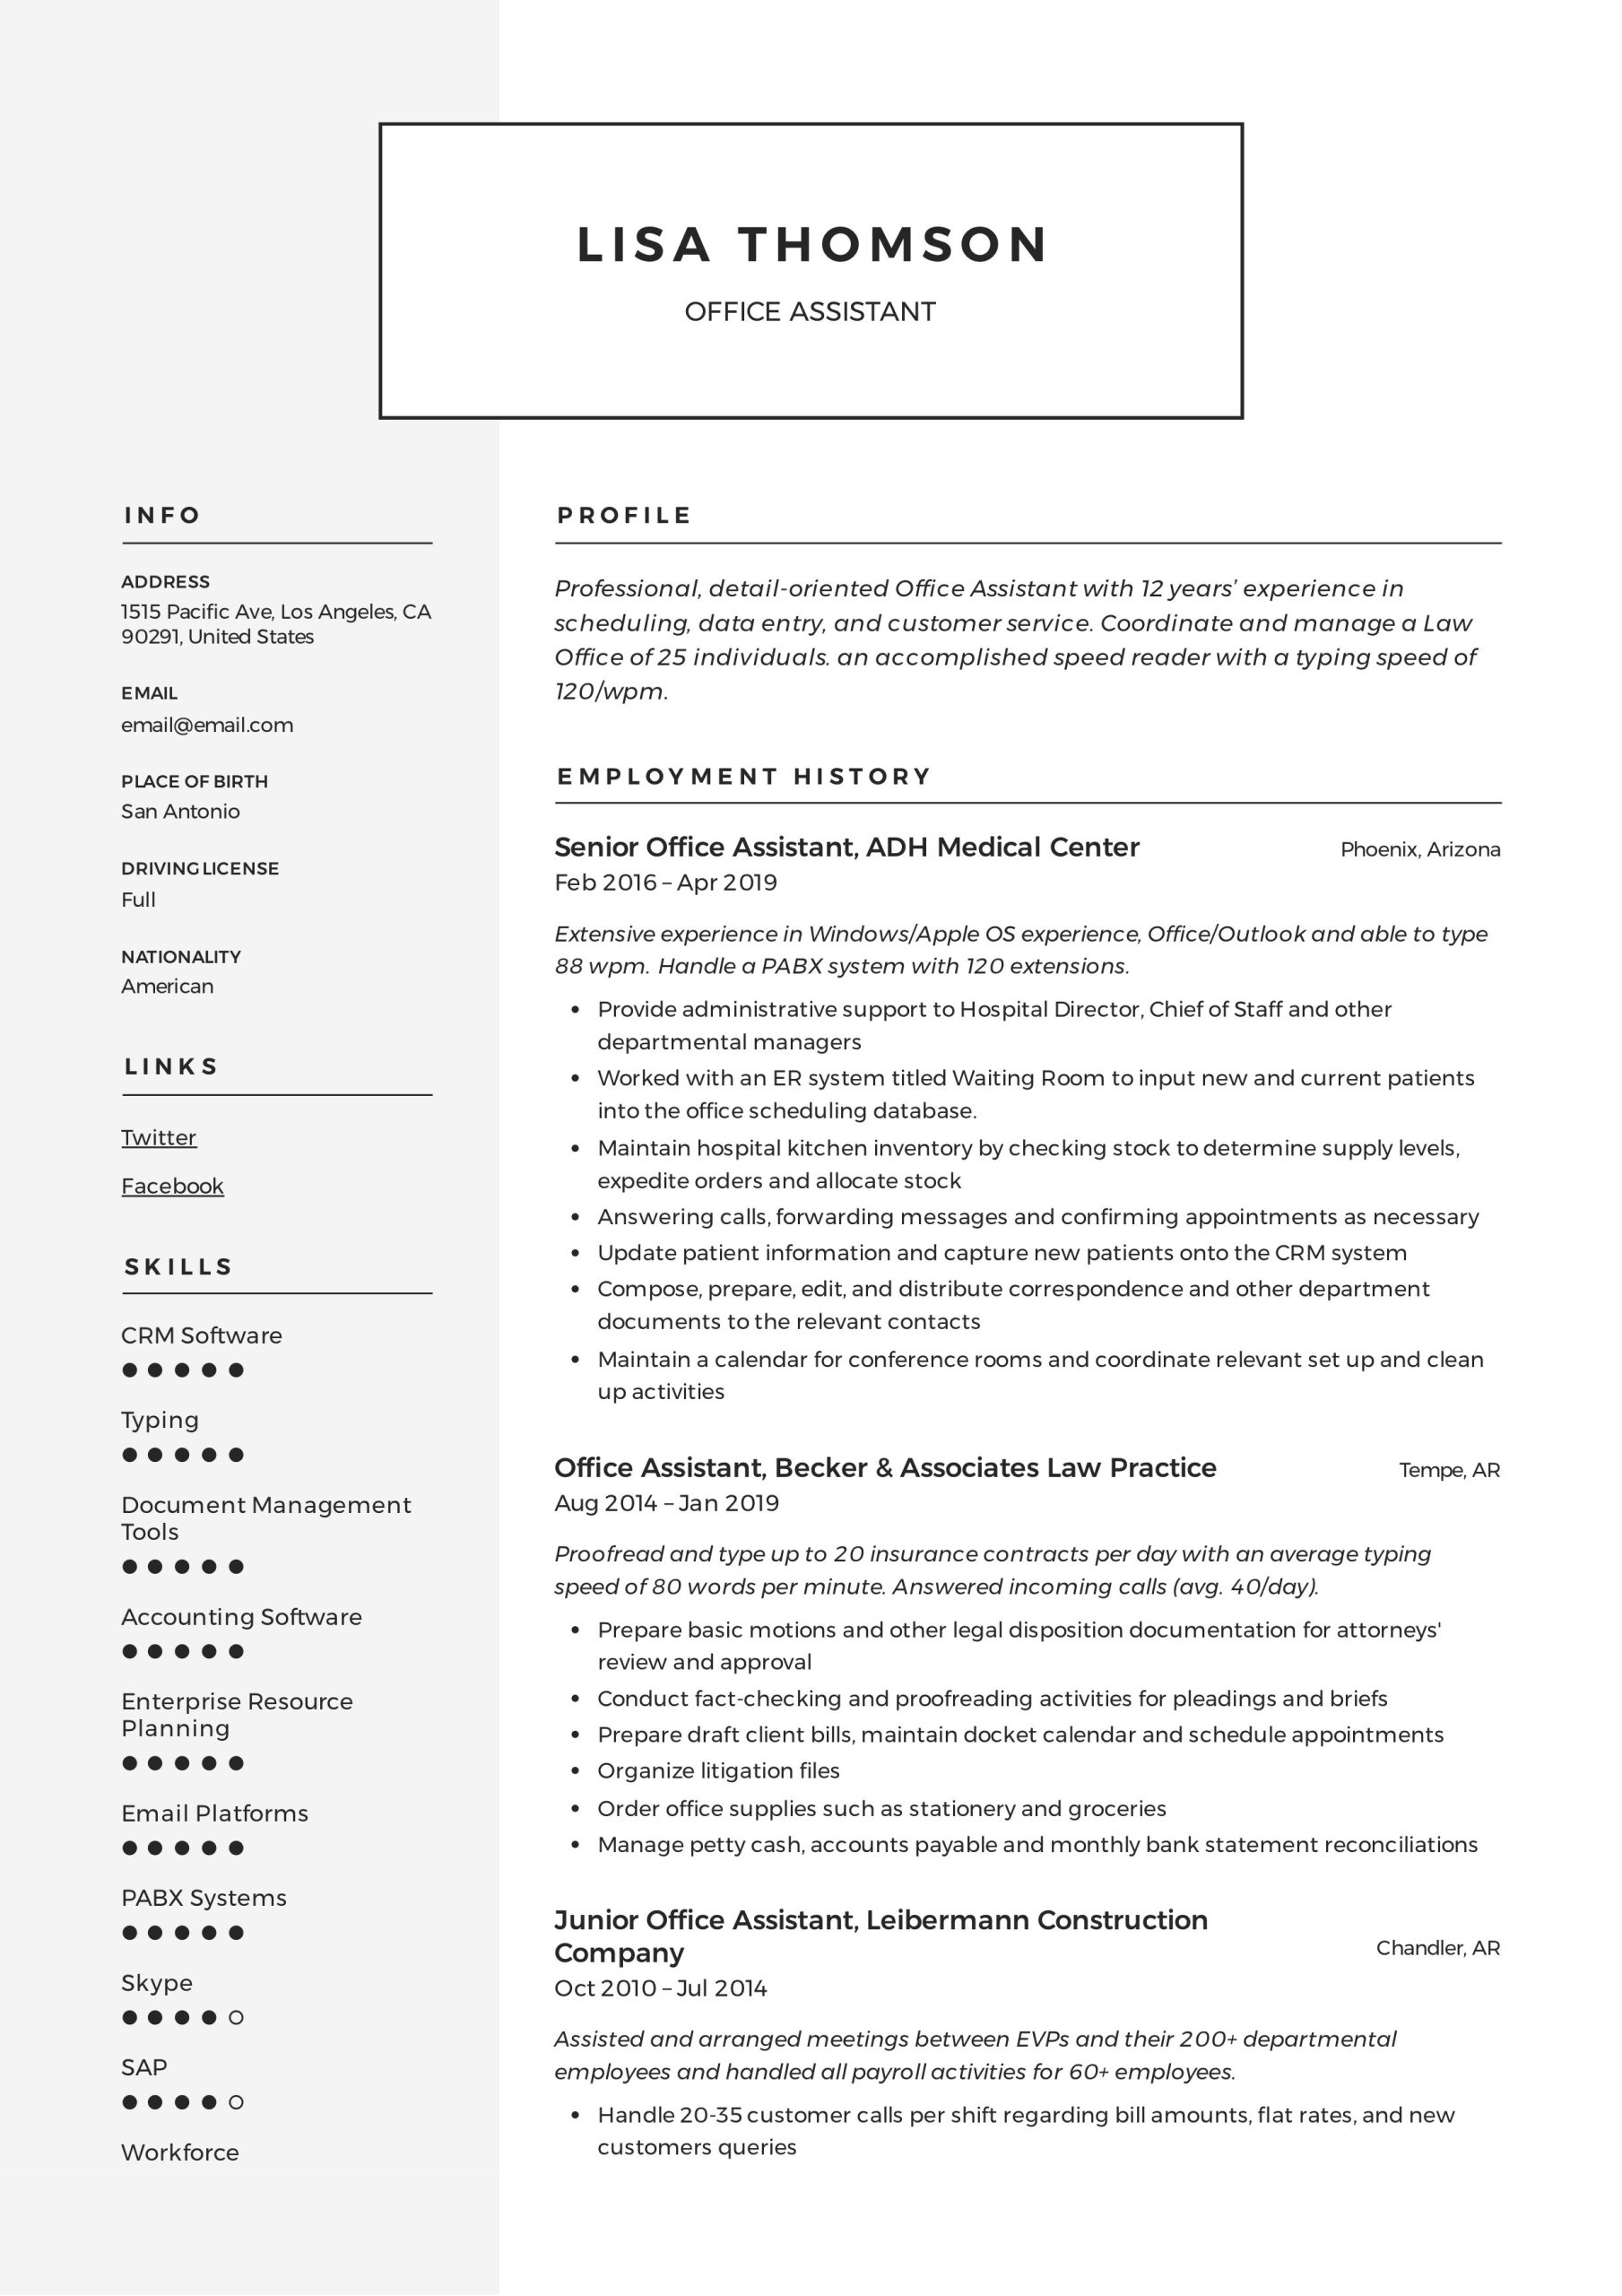 Law Firm Office assistant Job Description Sample Resume Office assistant Resume   Writing Guide 12 Resume Templates 2020